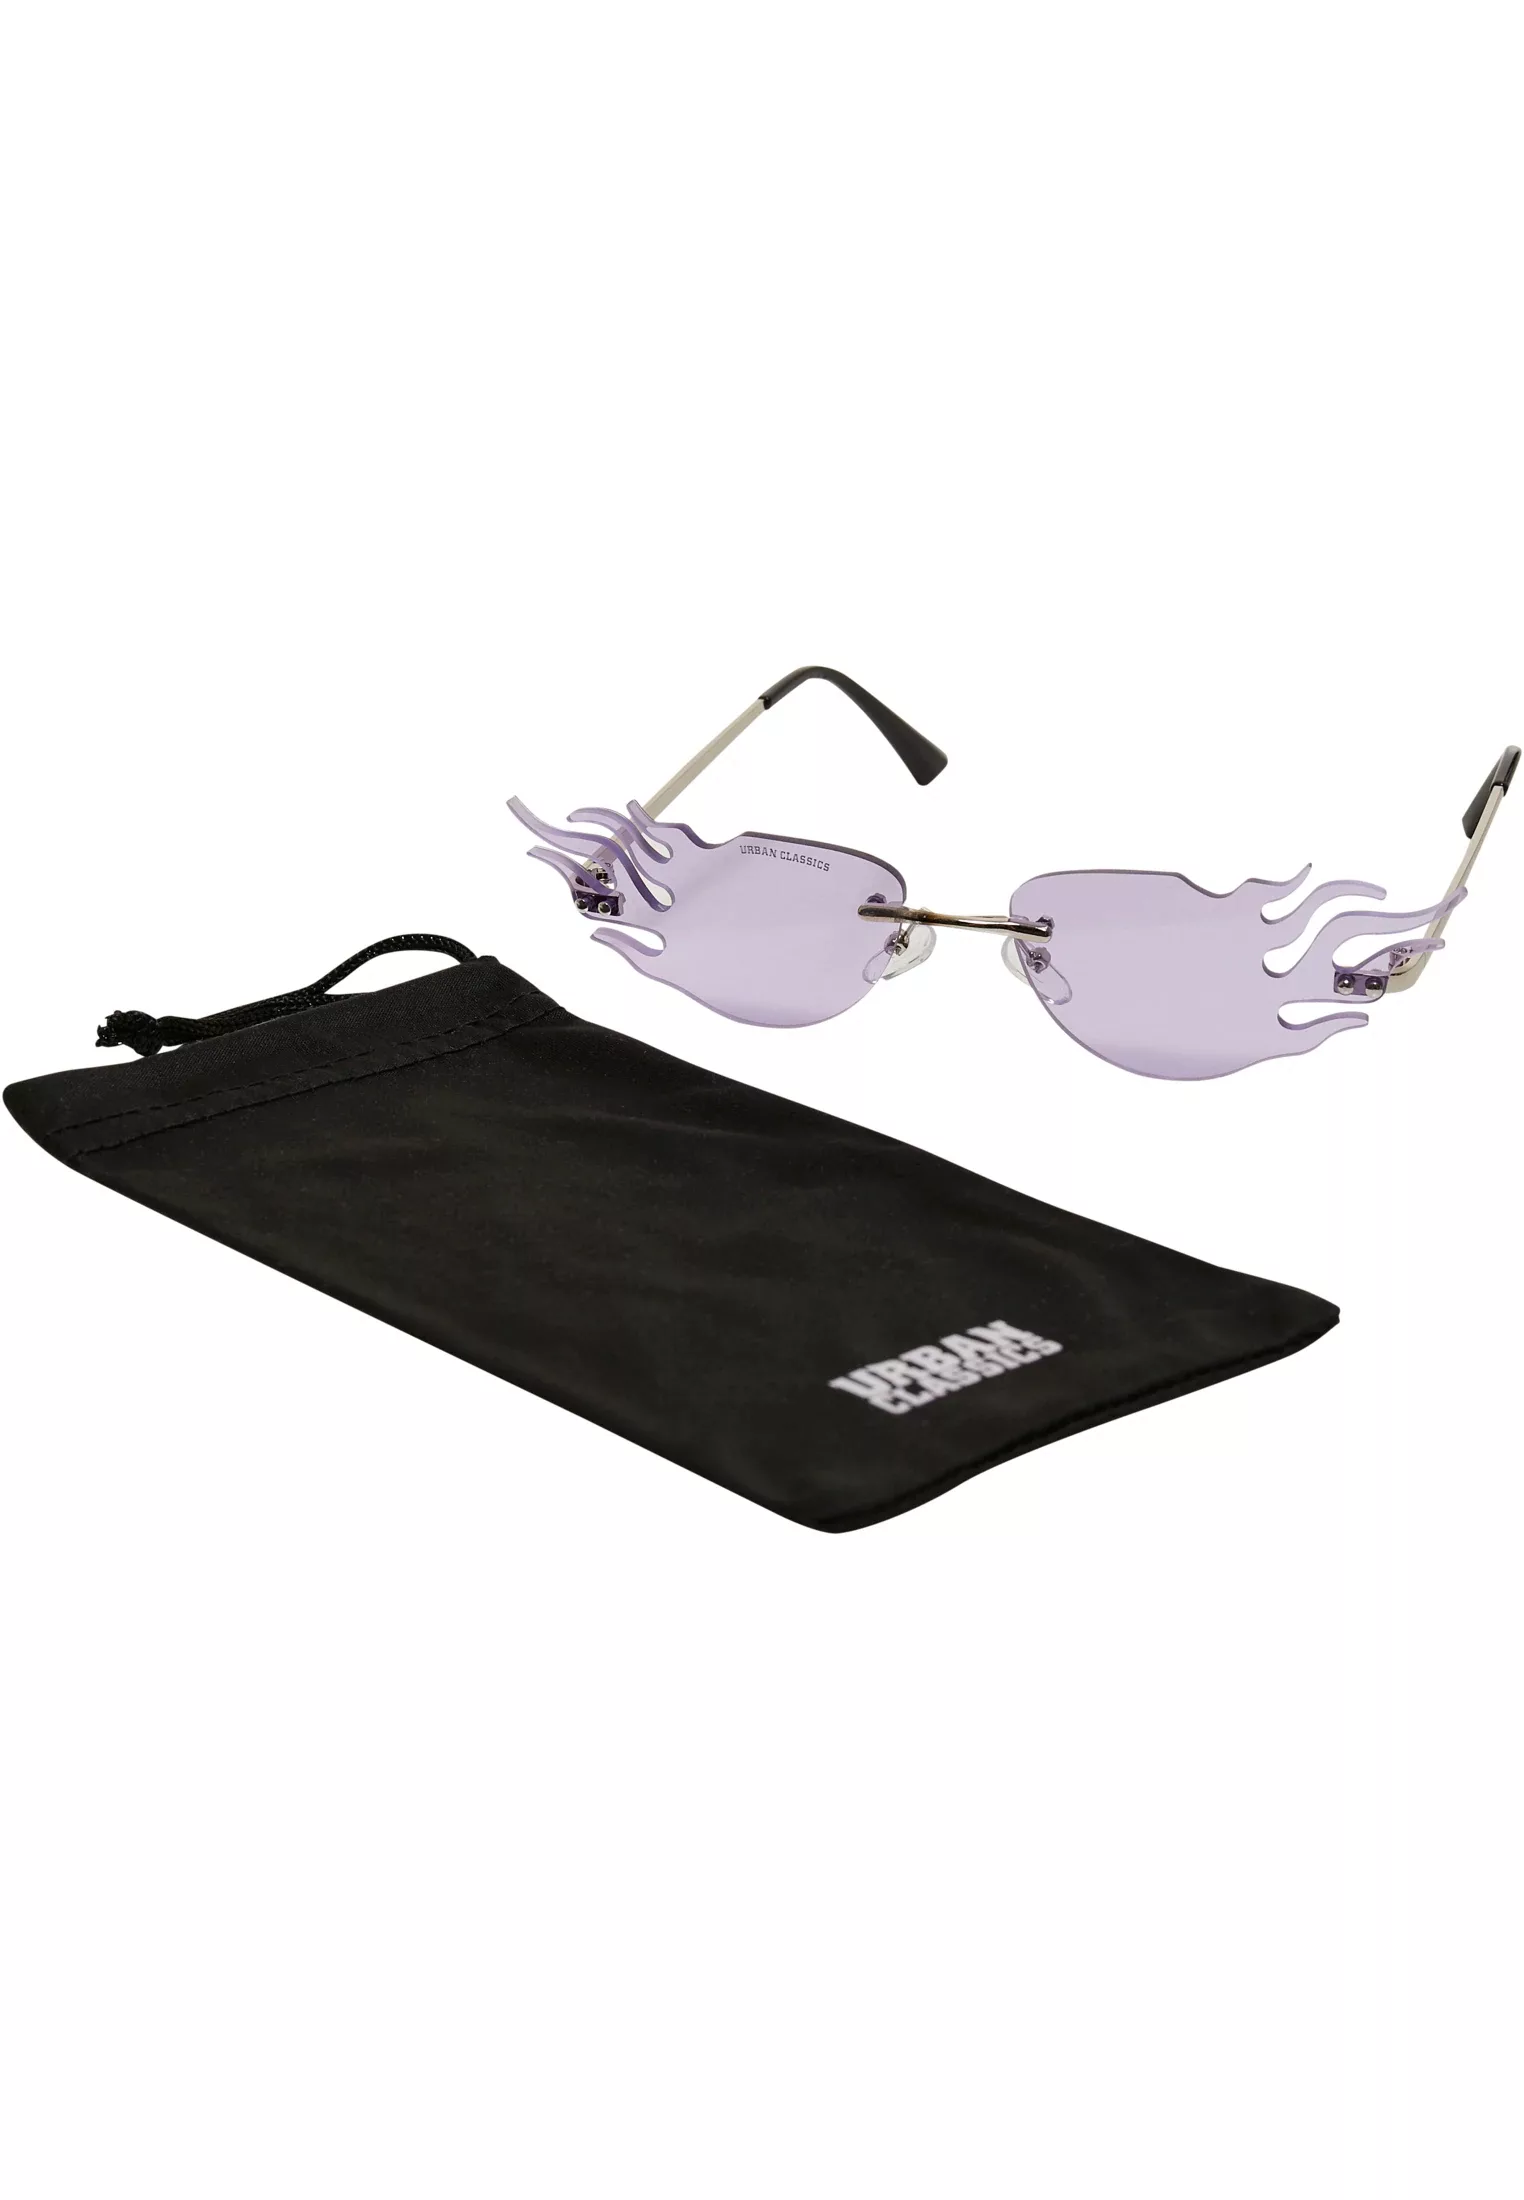 URBAN CLASSICS Sonnenbrille "Unisex Sunglasses Flame" günstig online kaufen